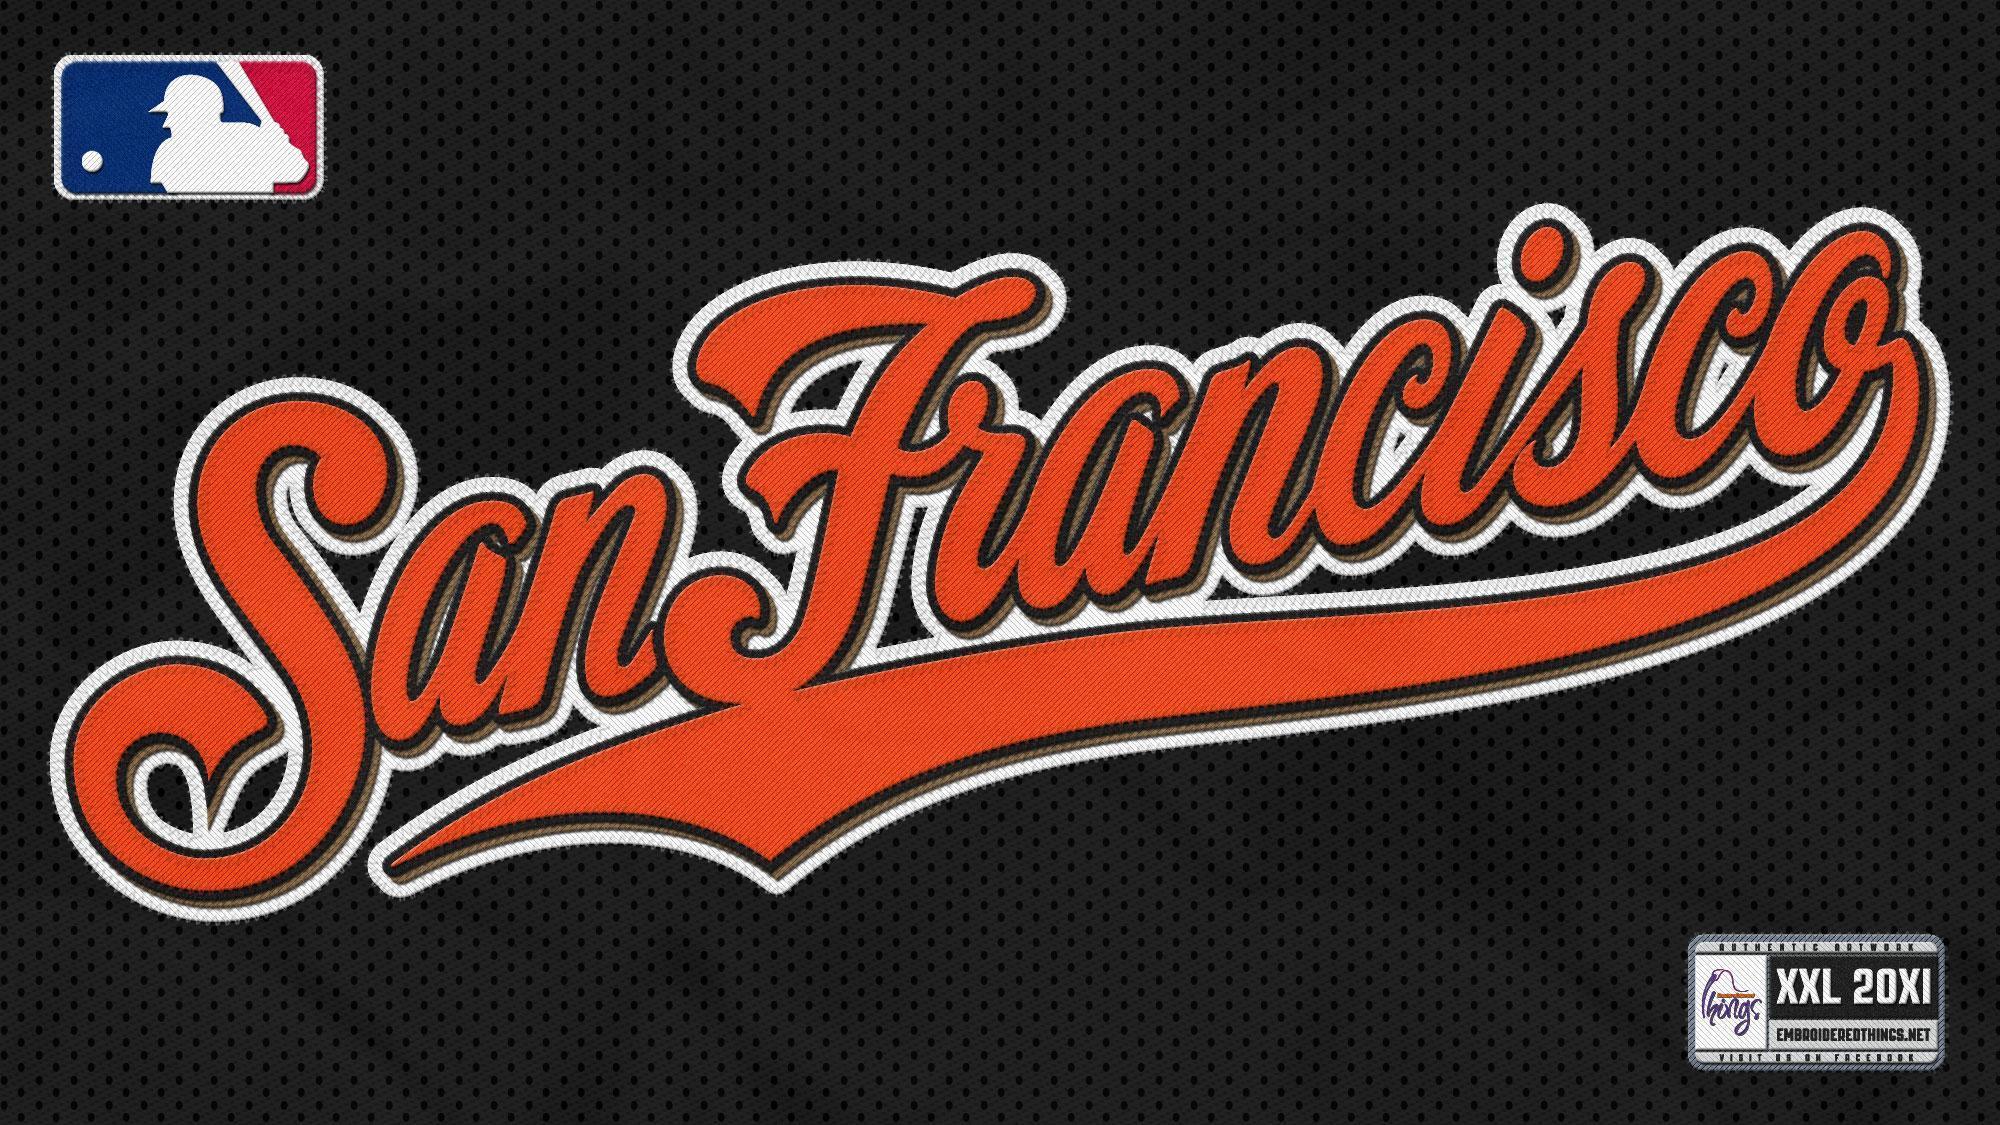 Calssics San Francisco Giants J Black Taken From SF Giants